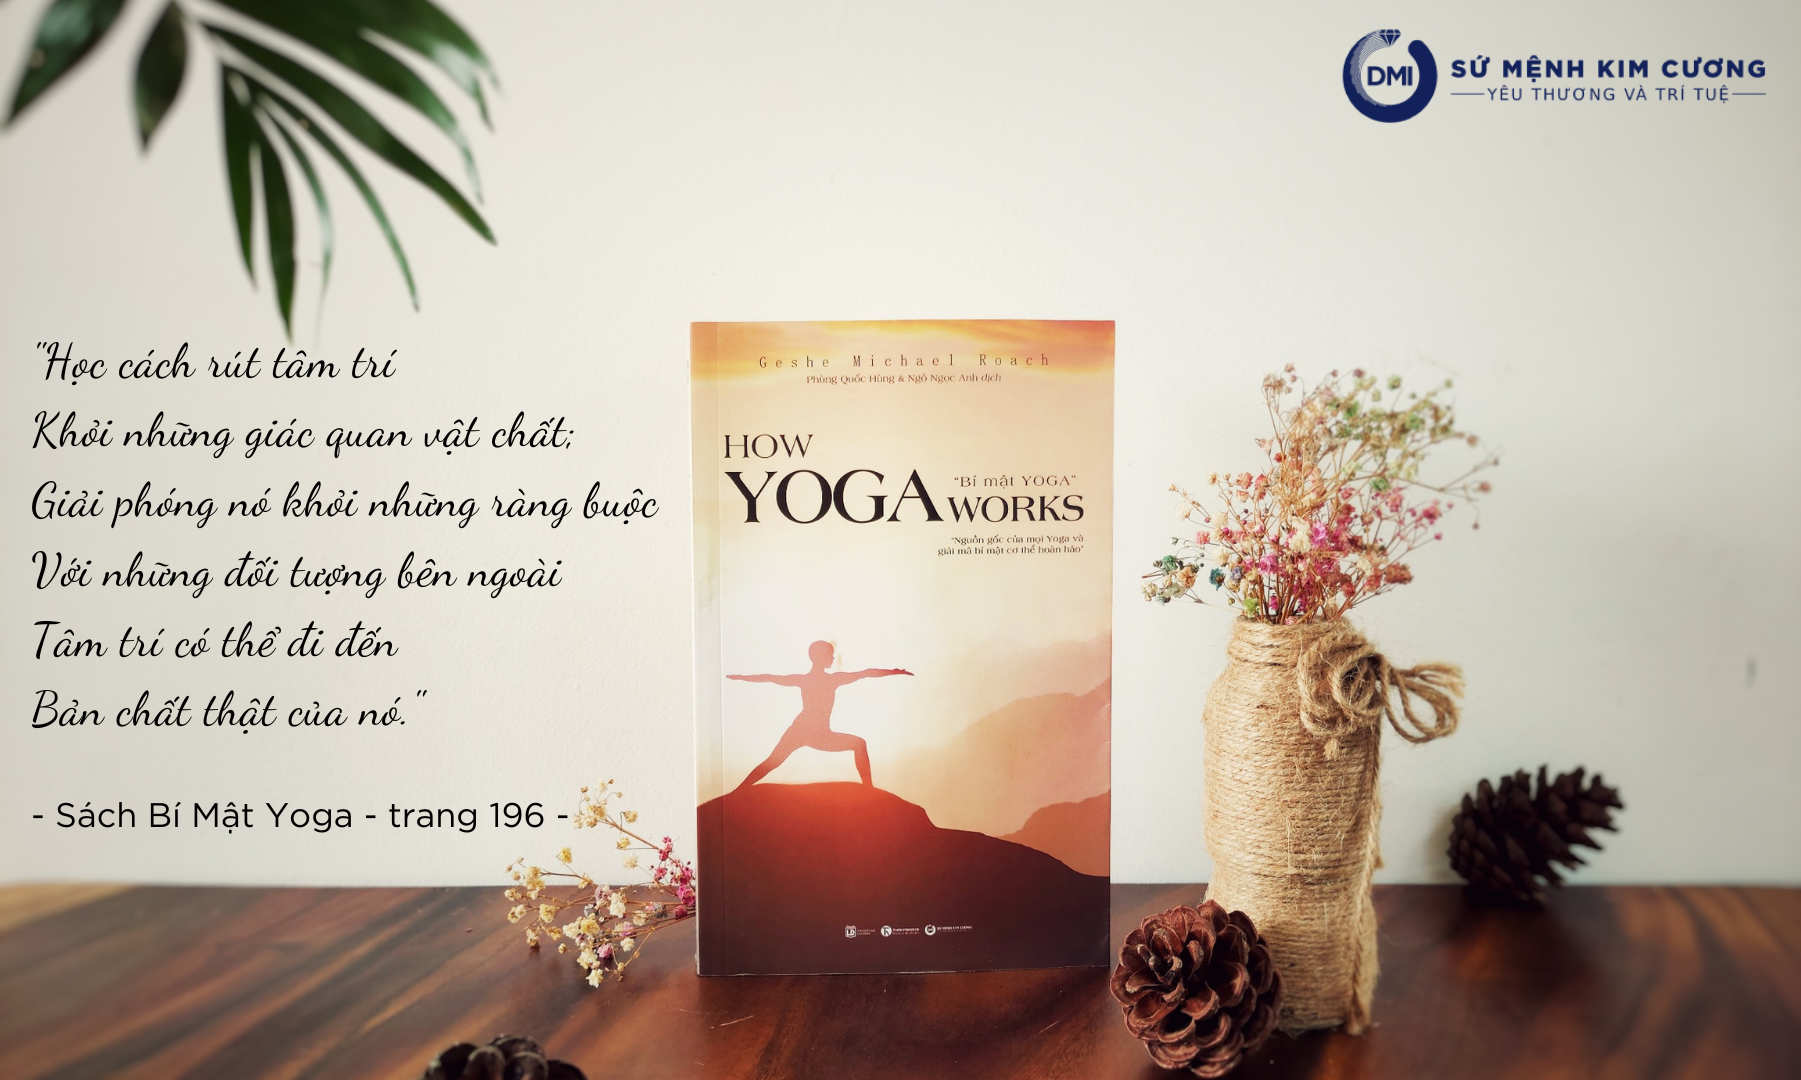 Sách "Bí mật yoga" của Geshe Michael Roach ra mắt độc giả Việt-4